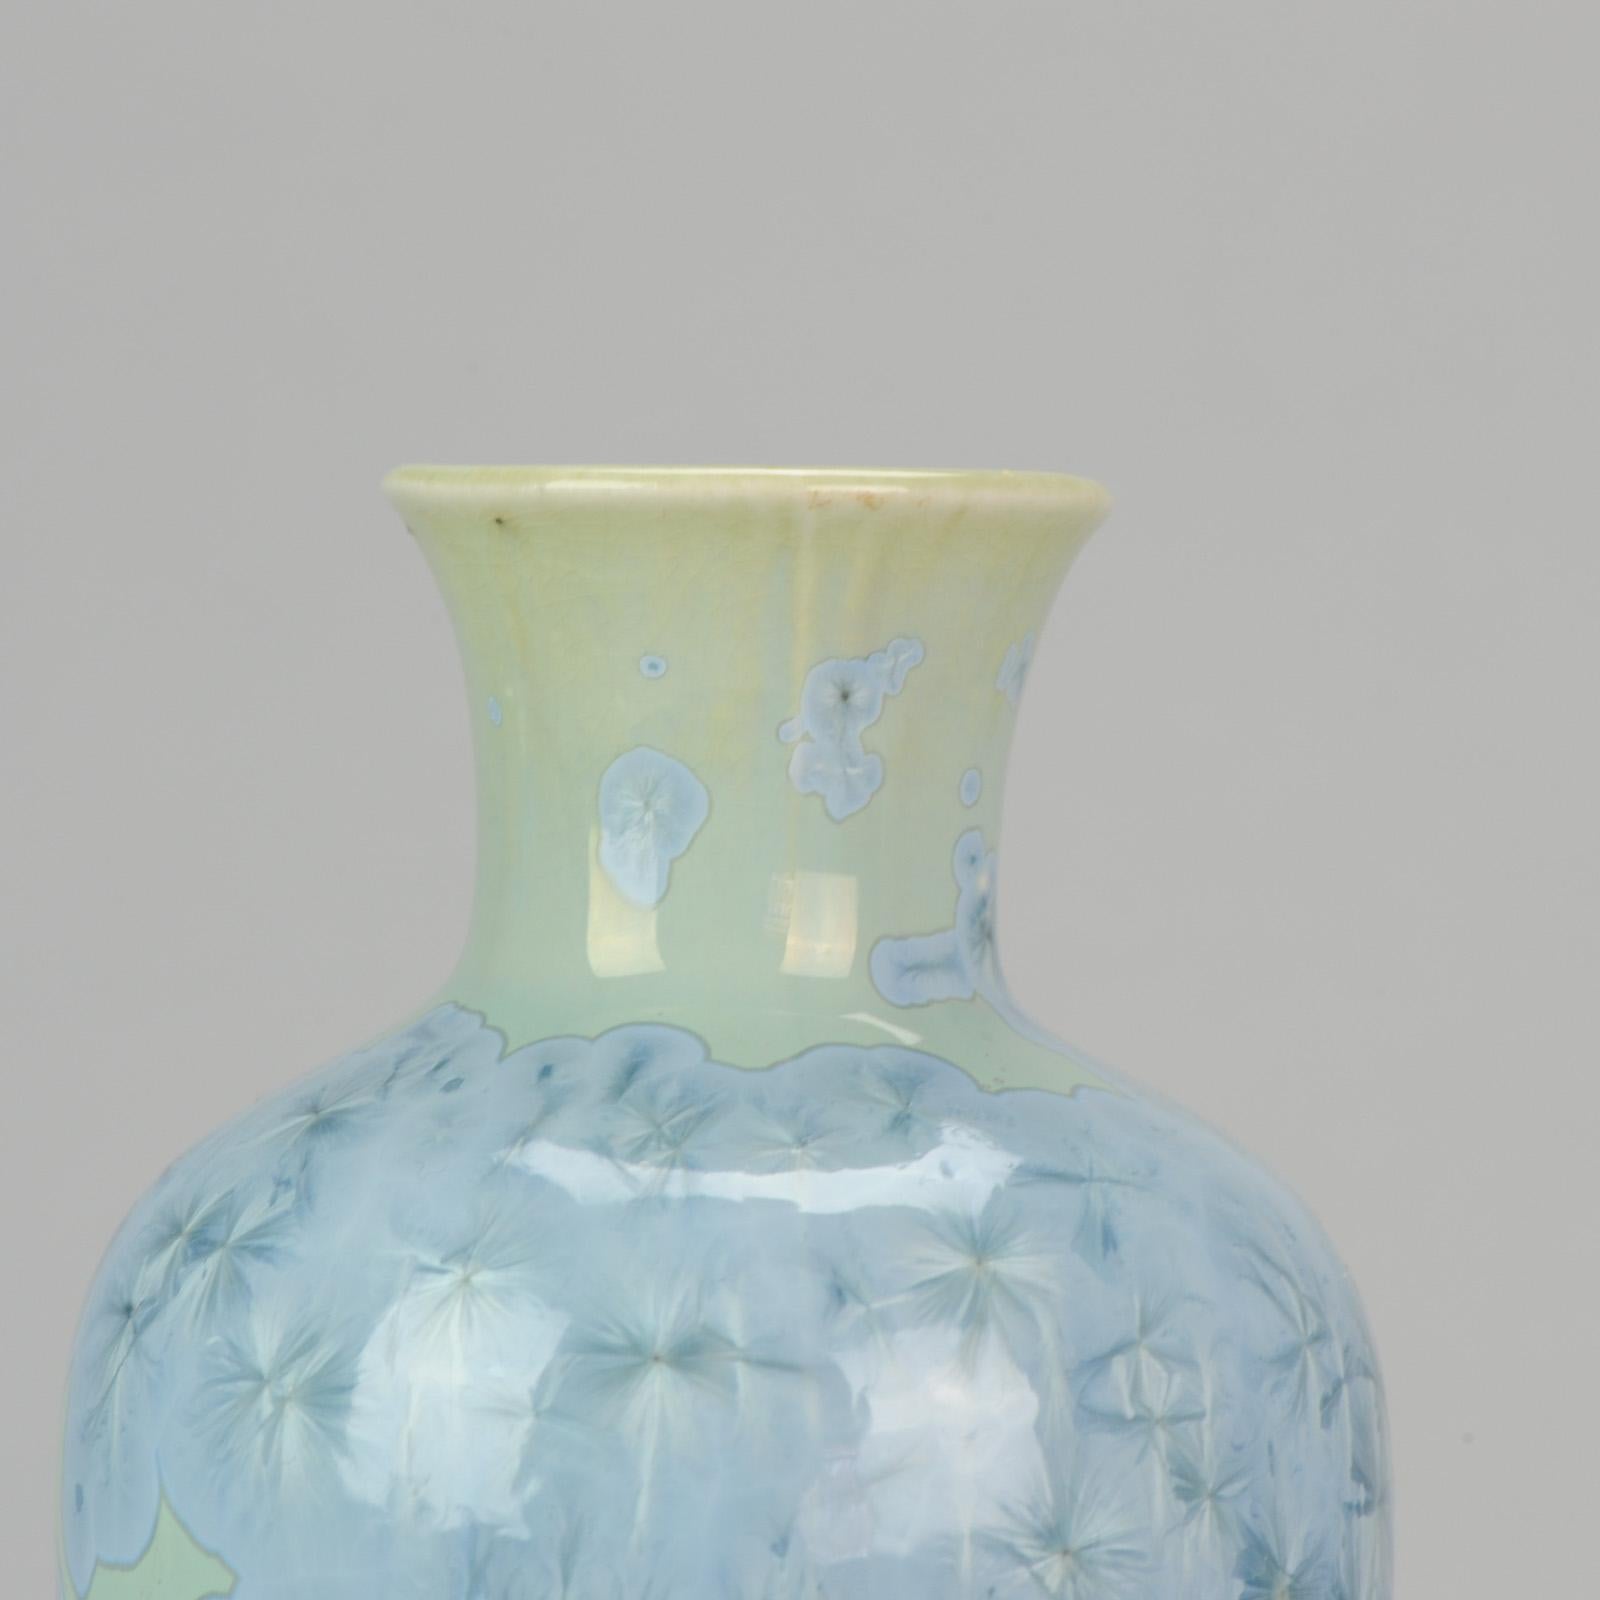 Shiwan 20th Century PRoC 1970-1980 Chinese Porcelain Vase Crystalline Glaz 5